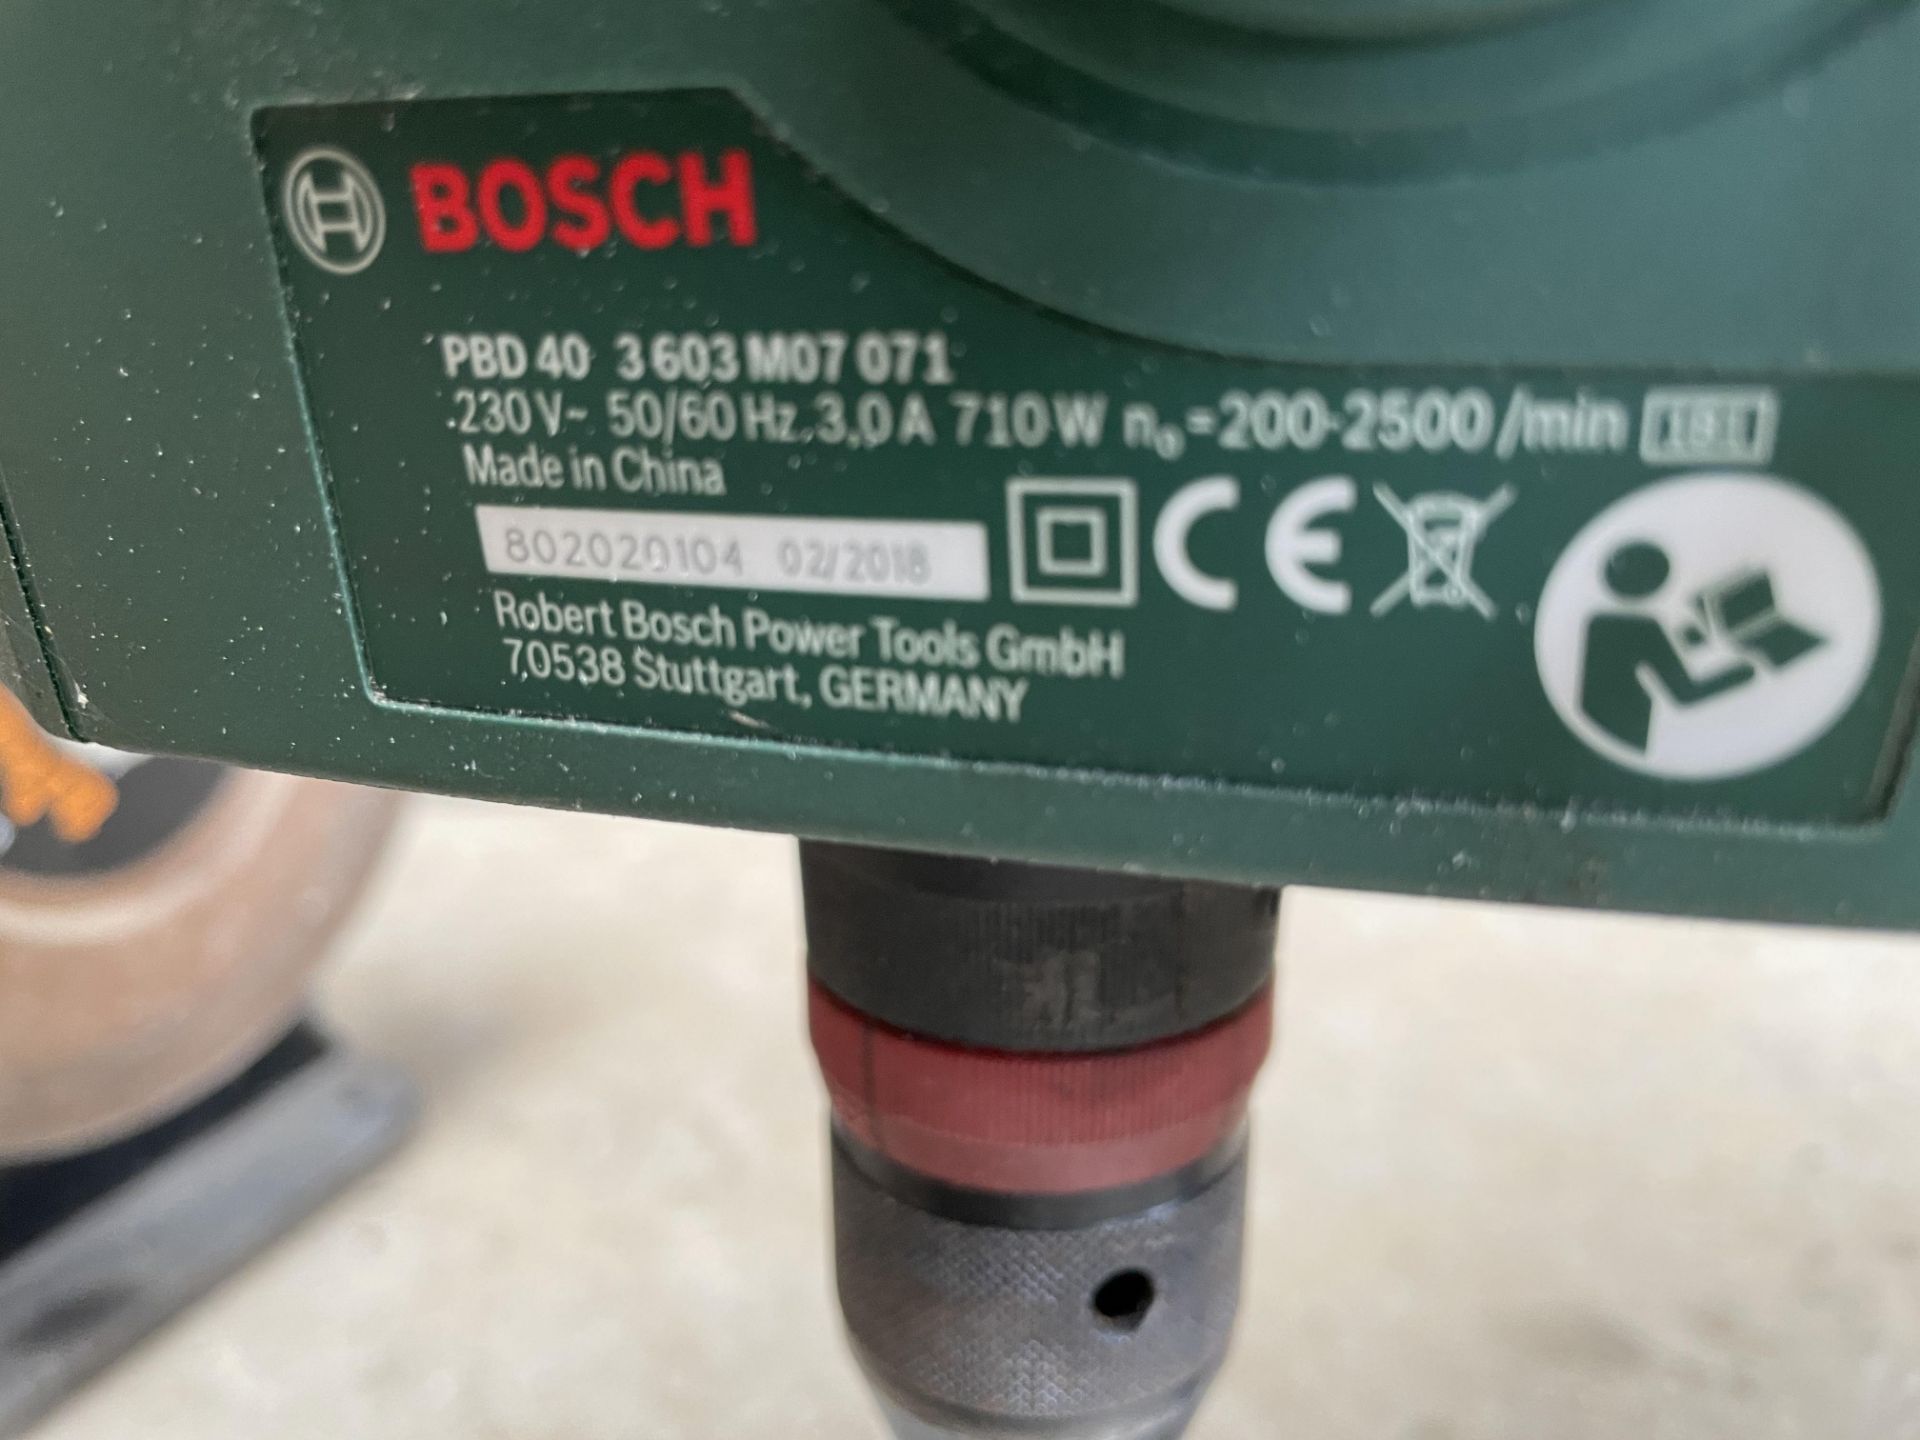 Bosch PBD40 Bench Drill - 230V. - Image 5 of 5